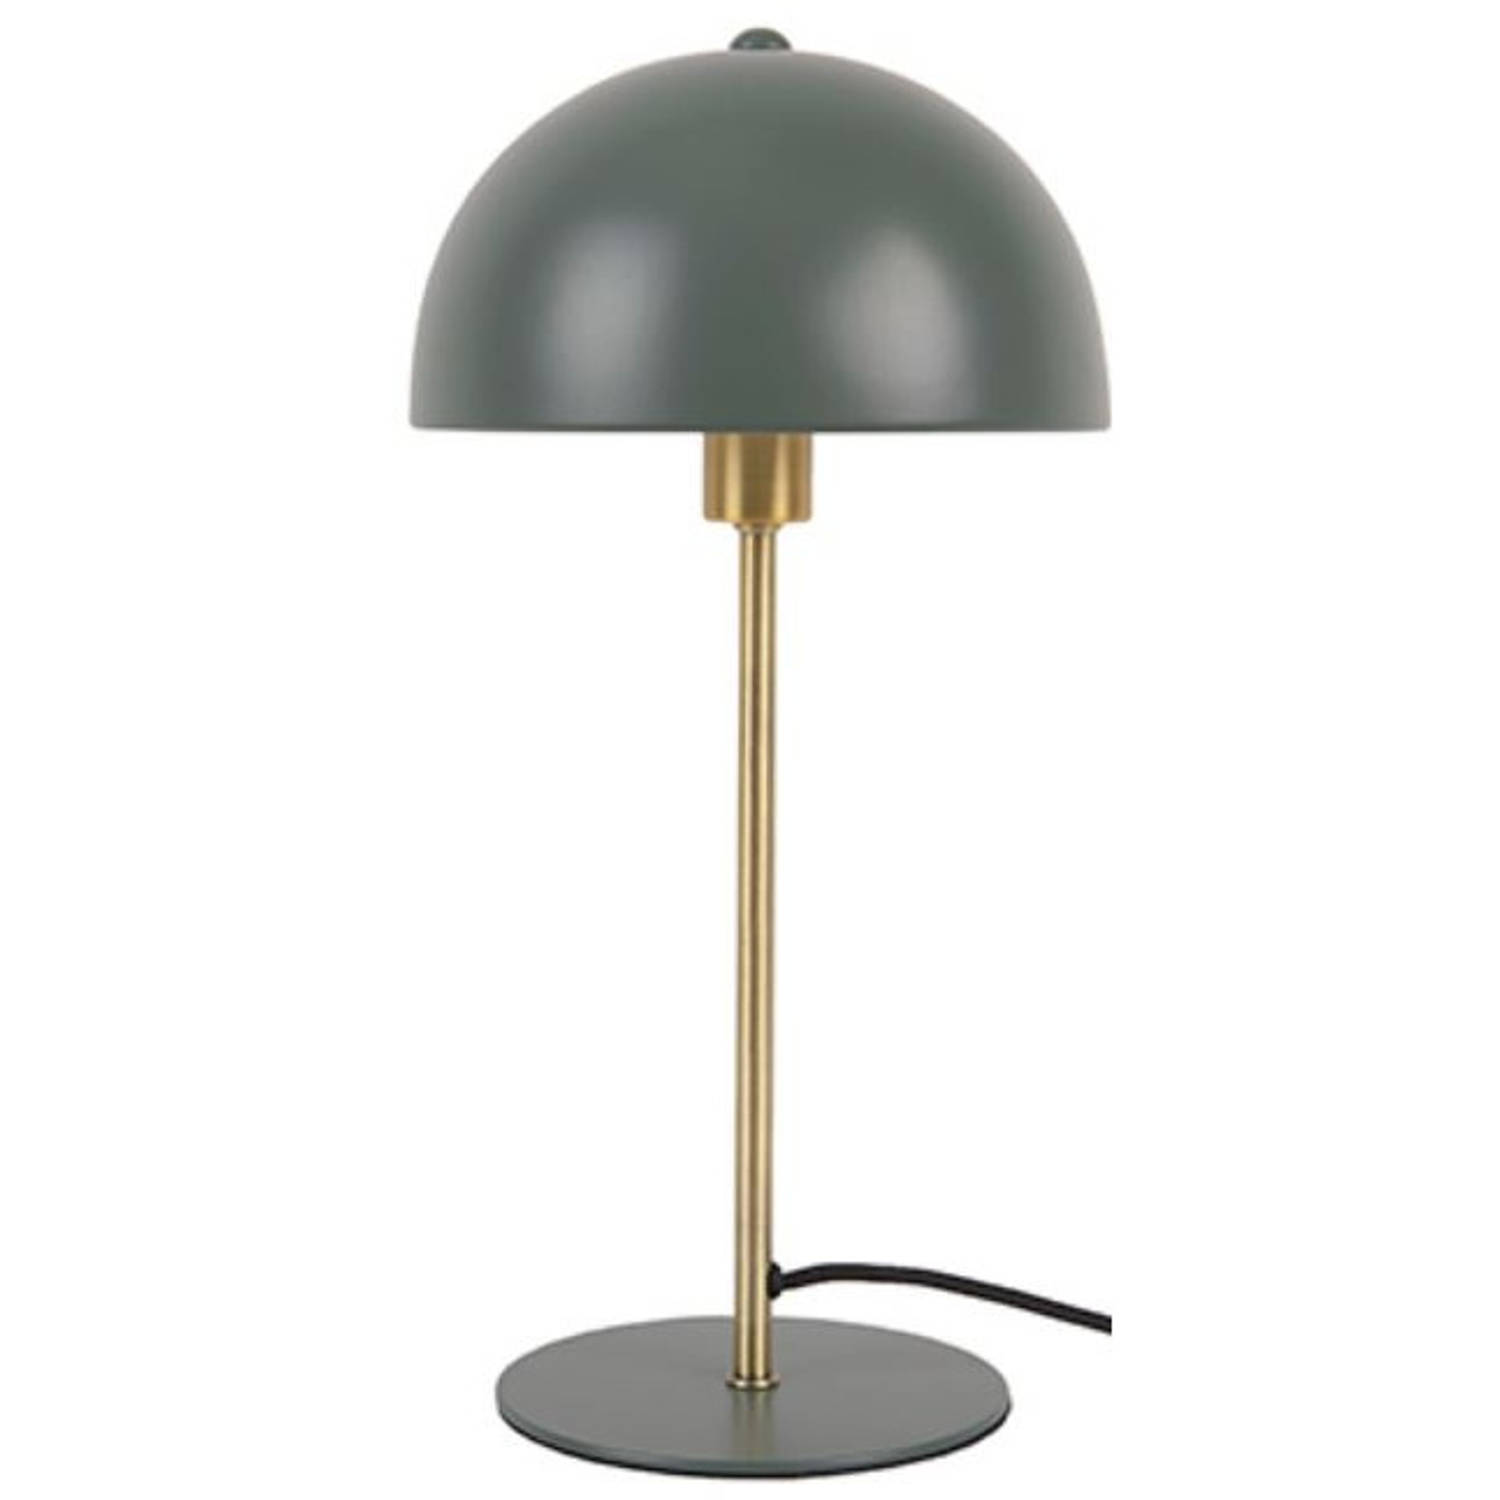 Leitmotiv tafellamp Bonnet 20 x 39 cm staal groen/goud aanbieding